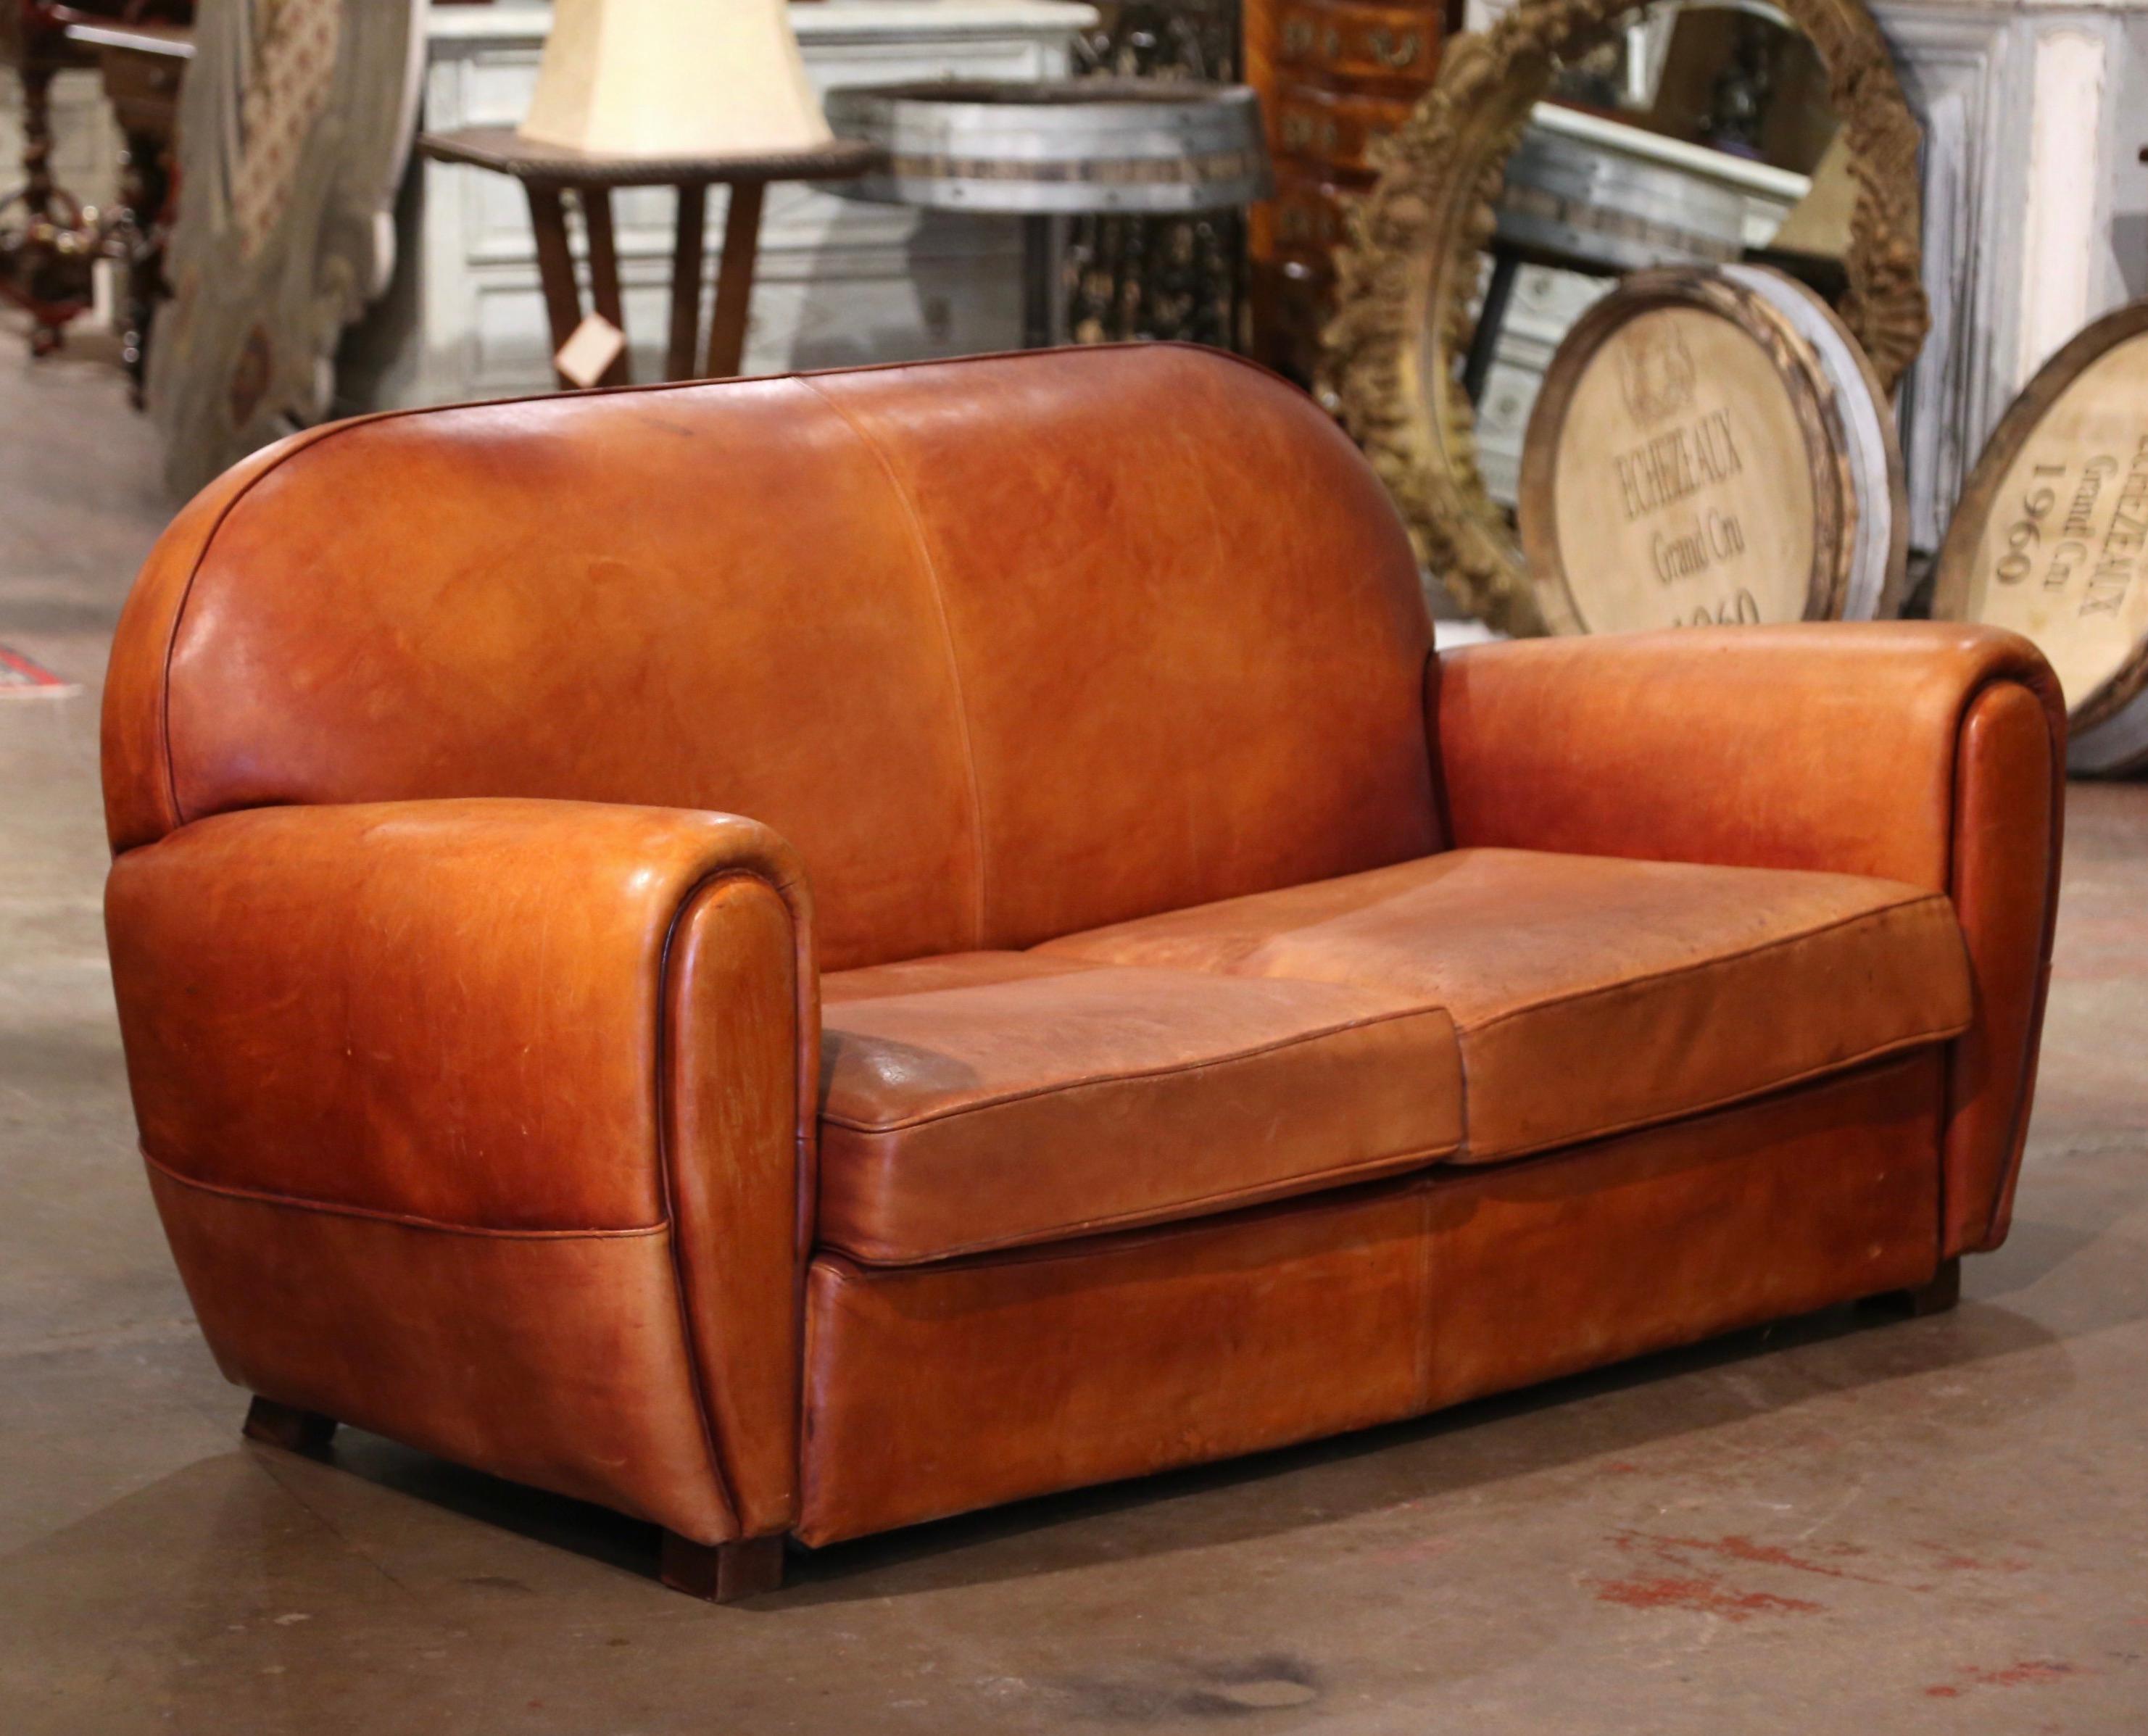 Ce canapé club classique et antique de style Art déco a été fabriqué en France, vers 1920. Ce majestueux canapé est doté de larges accoudoirs arrondis, d'un dossier à la forme arquée et de pieds carrés recouverts de cuir à la base. La chaise